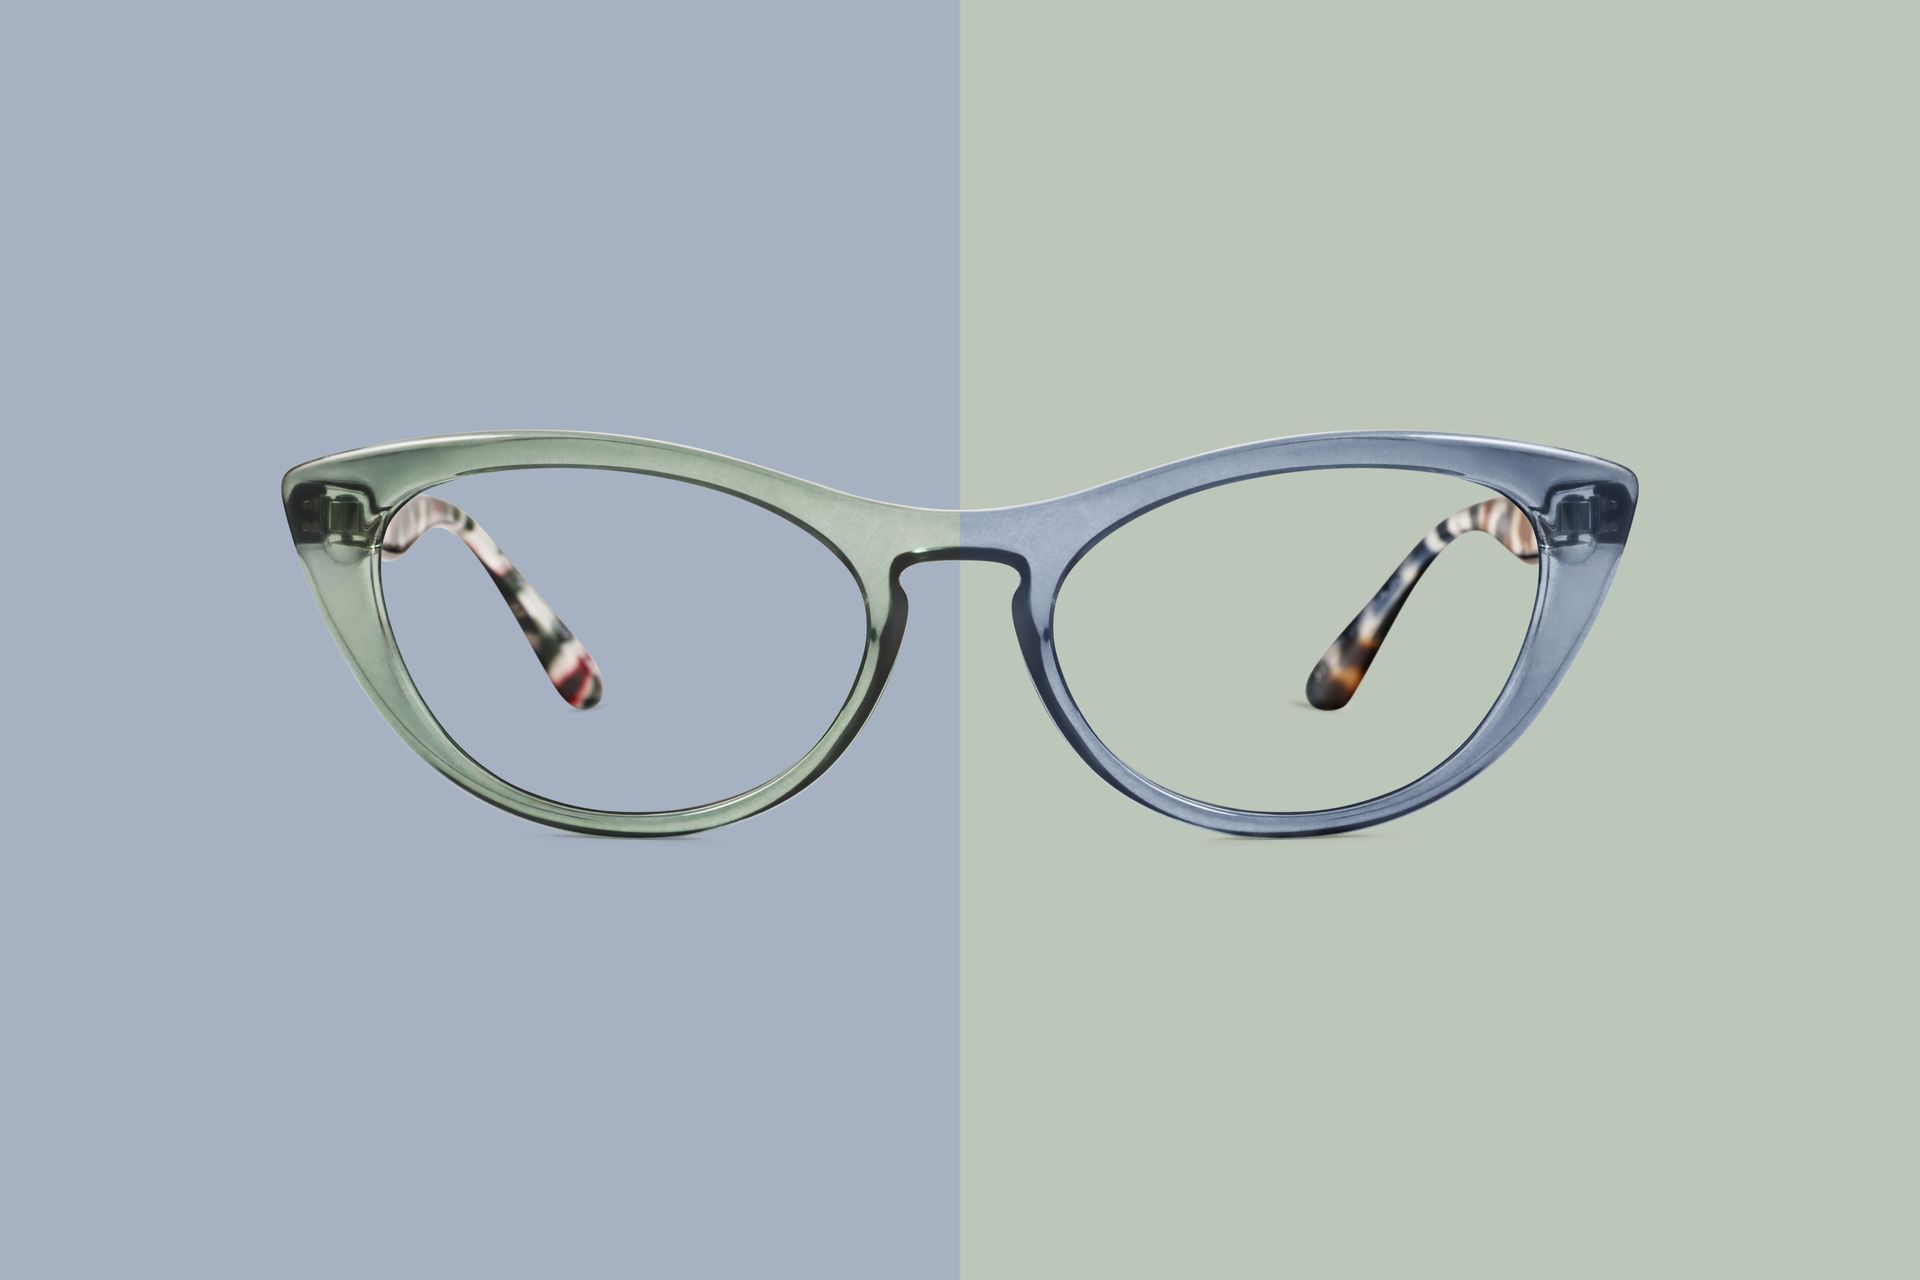 Paire de lunettes sur fond bleu et vert